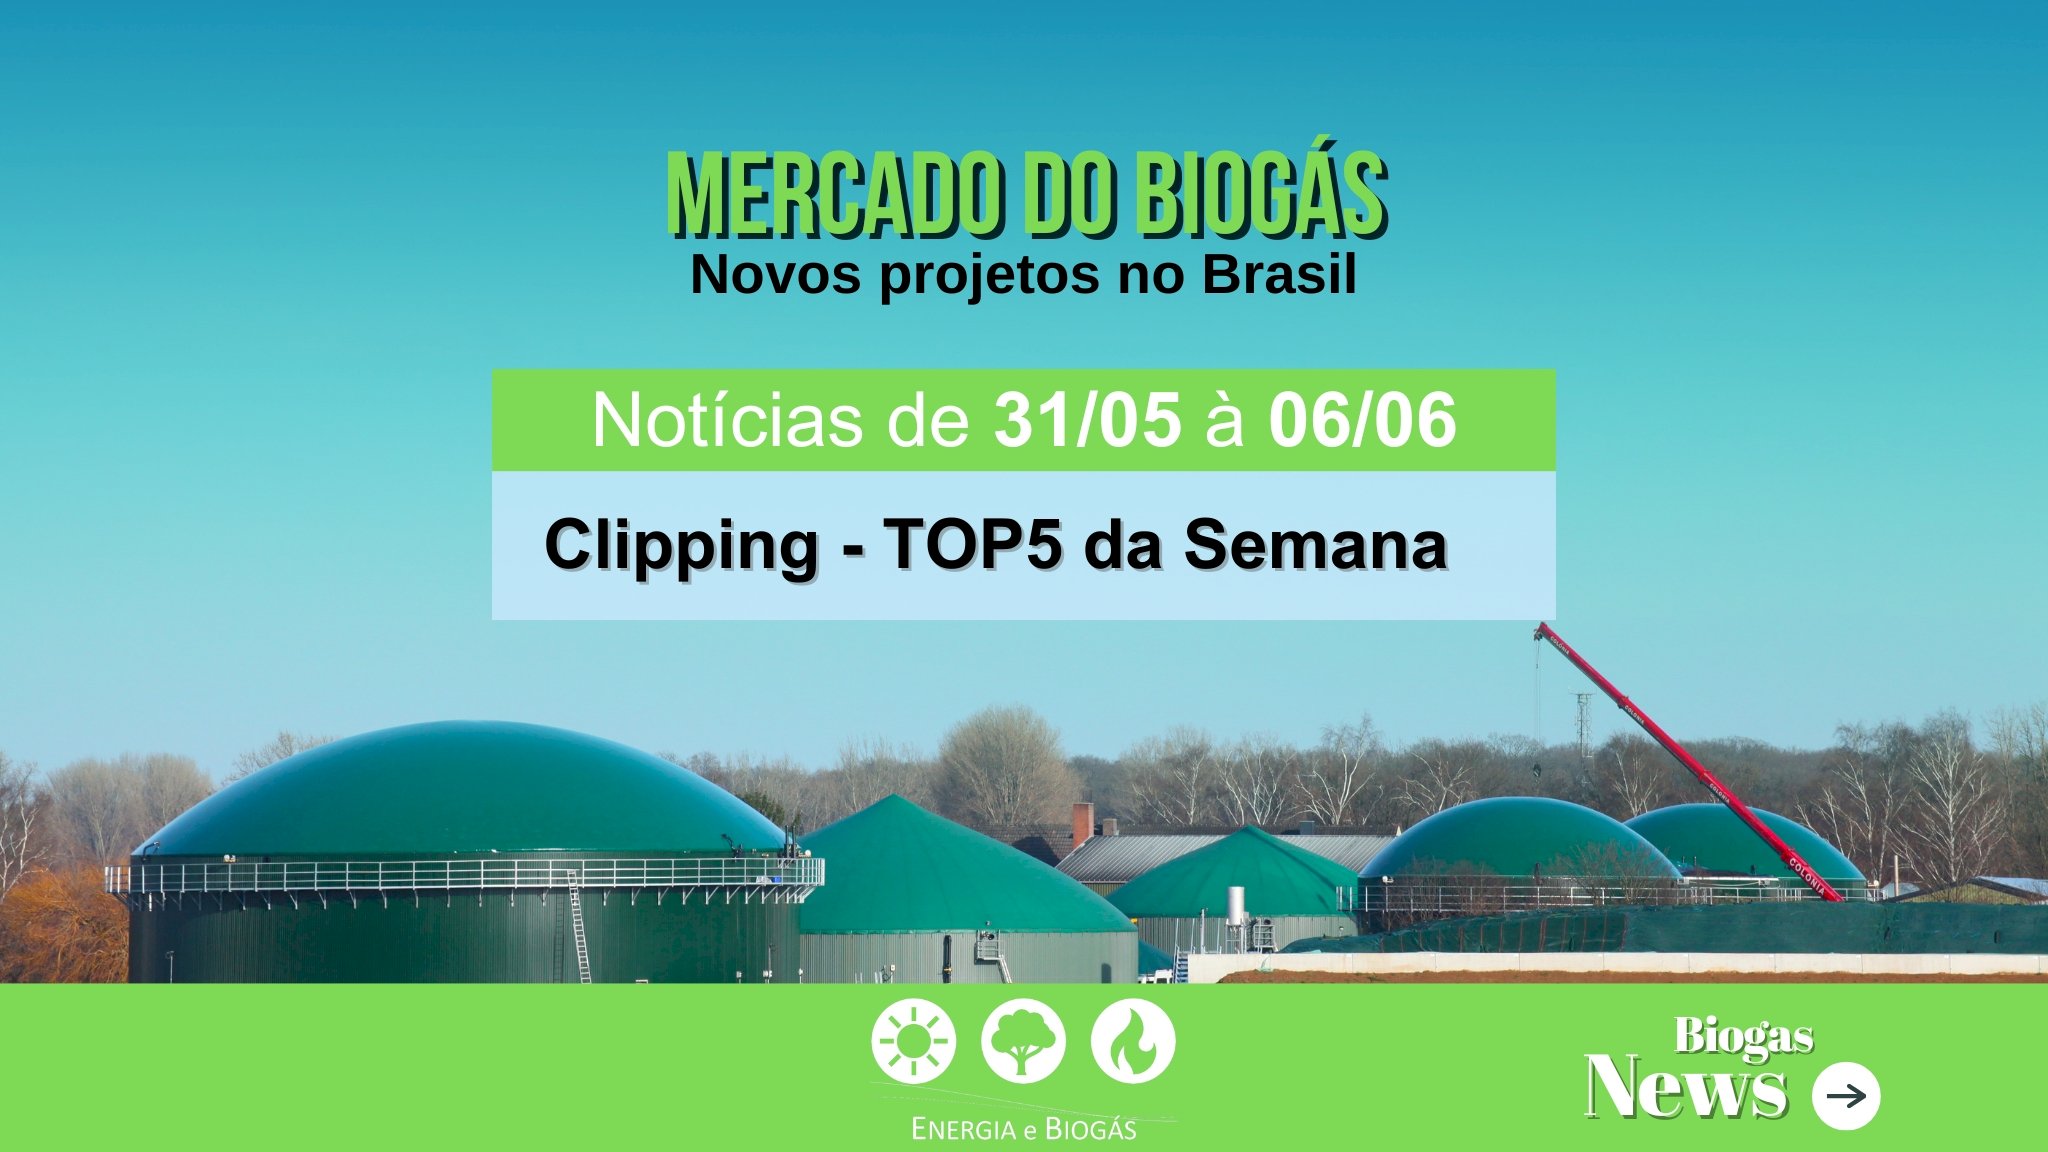 Biogás Clipping TOP 5 – Mercado do Biogás em Expansão